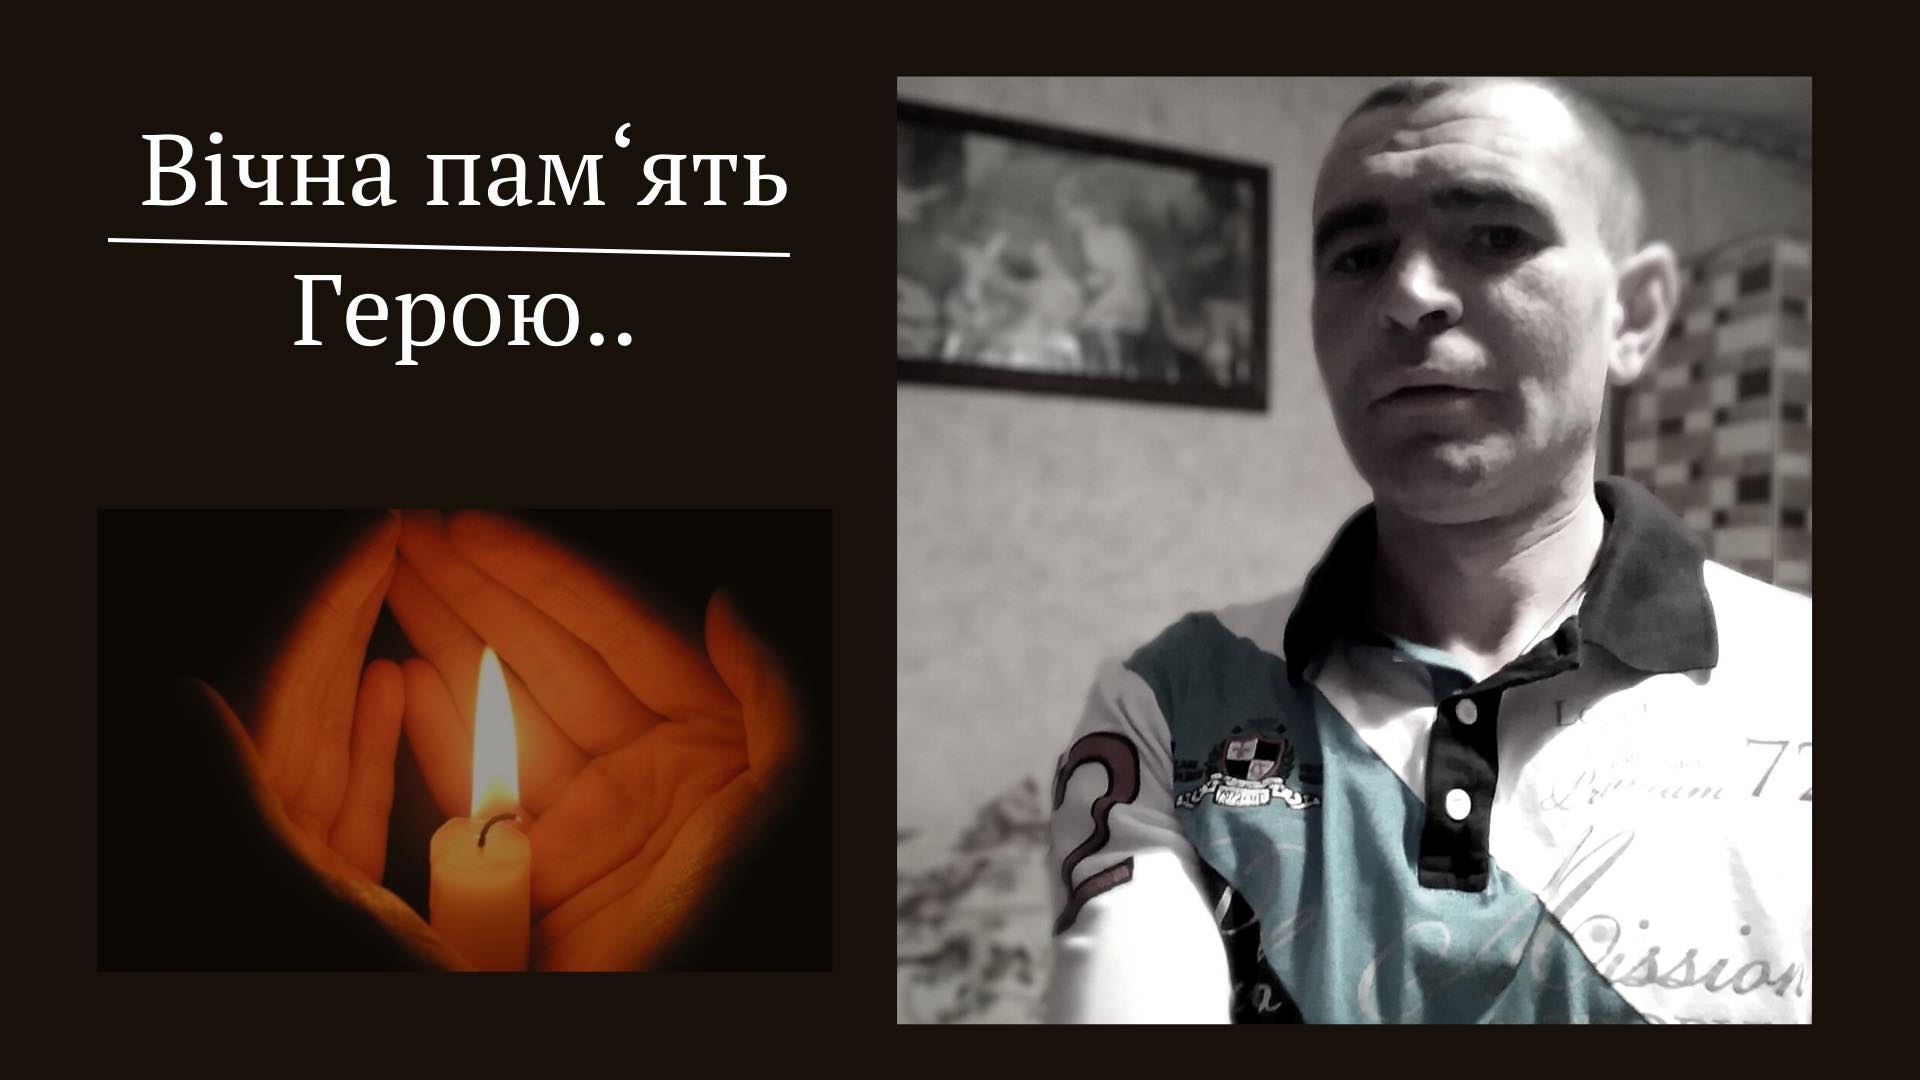 У суботу, 24 вересня відбудеться церемонія прощання із загиблим Героєм, військовослужбовцем військової частини А4221 Збройних Сил України - Павлючок Богданом Степановичем.